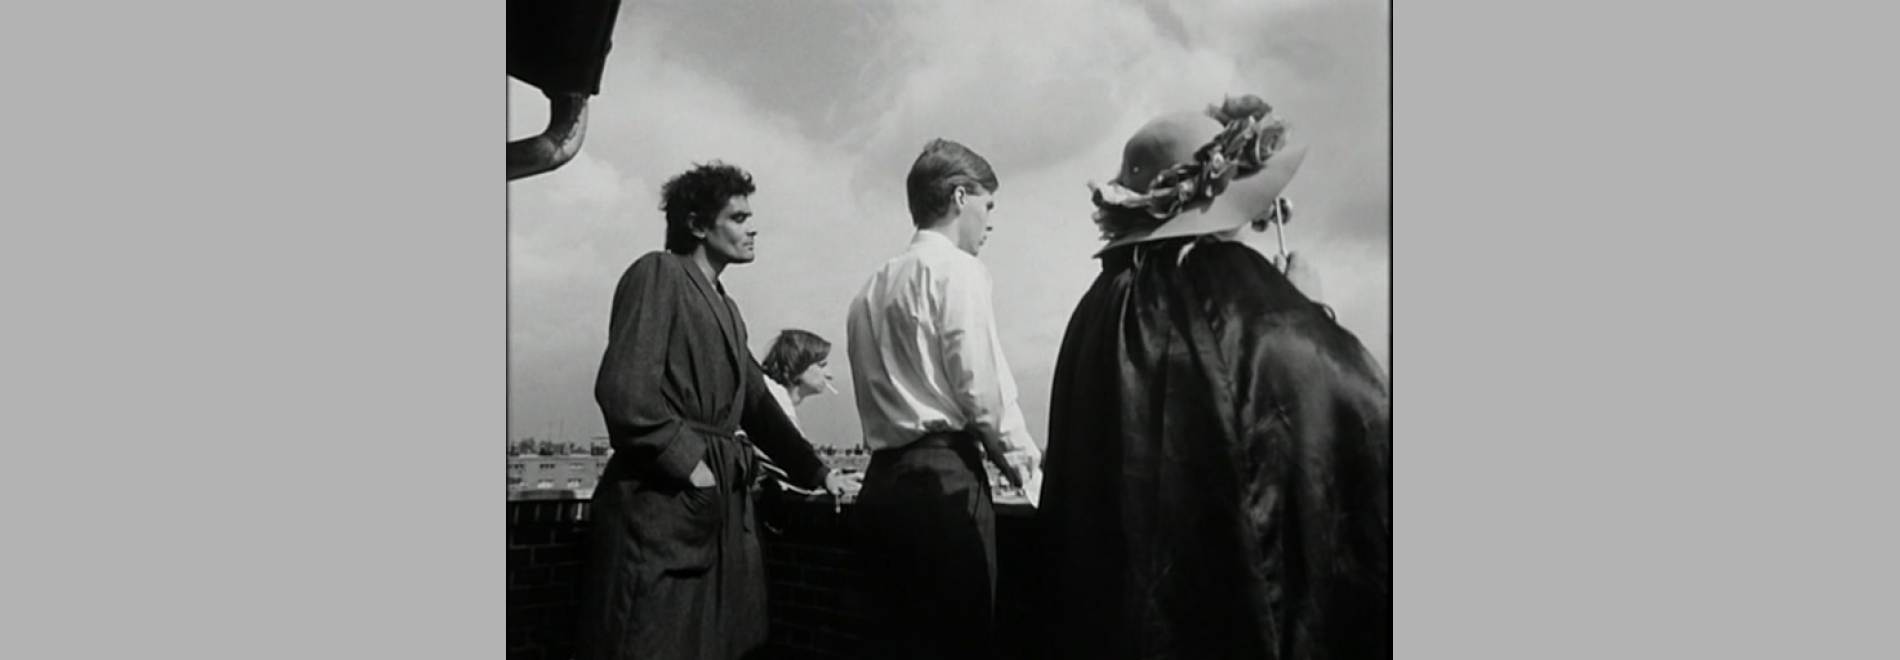 Jean Marie Straub und Danièle Huillet bei der Arbeit an einem Film nach Franz Kafkas Romanfragment (Harun Farocki, 1983)